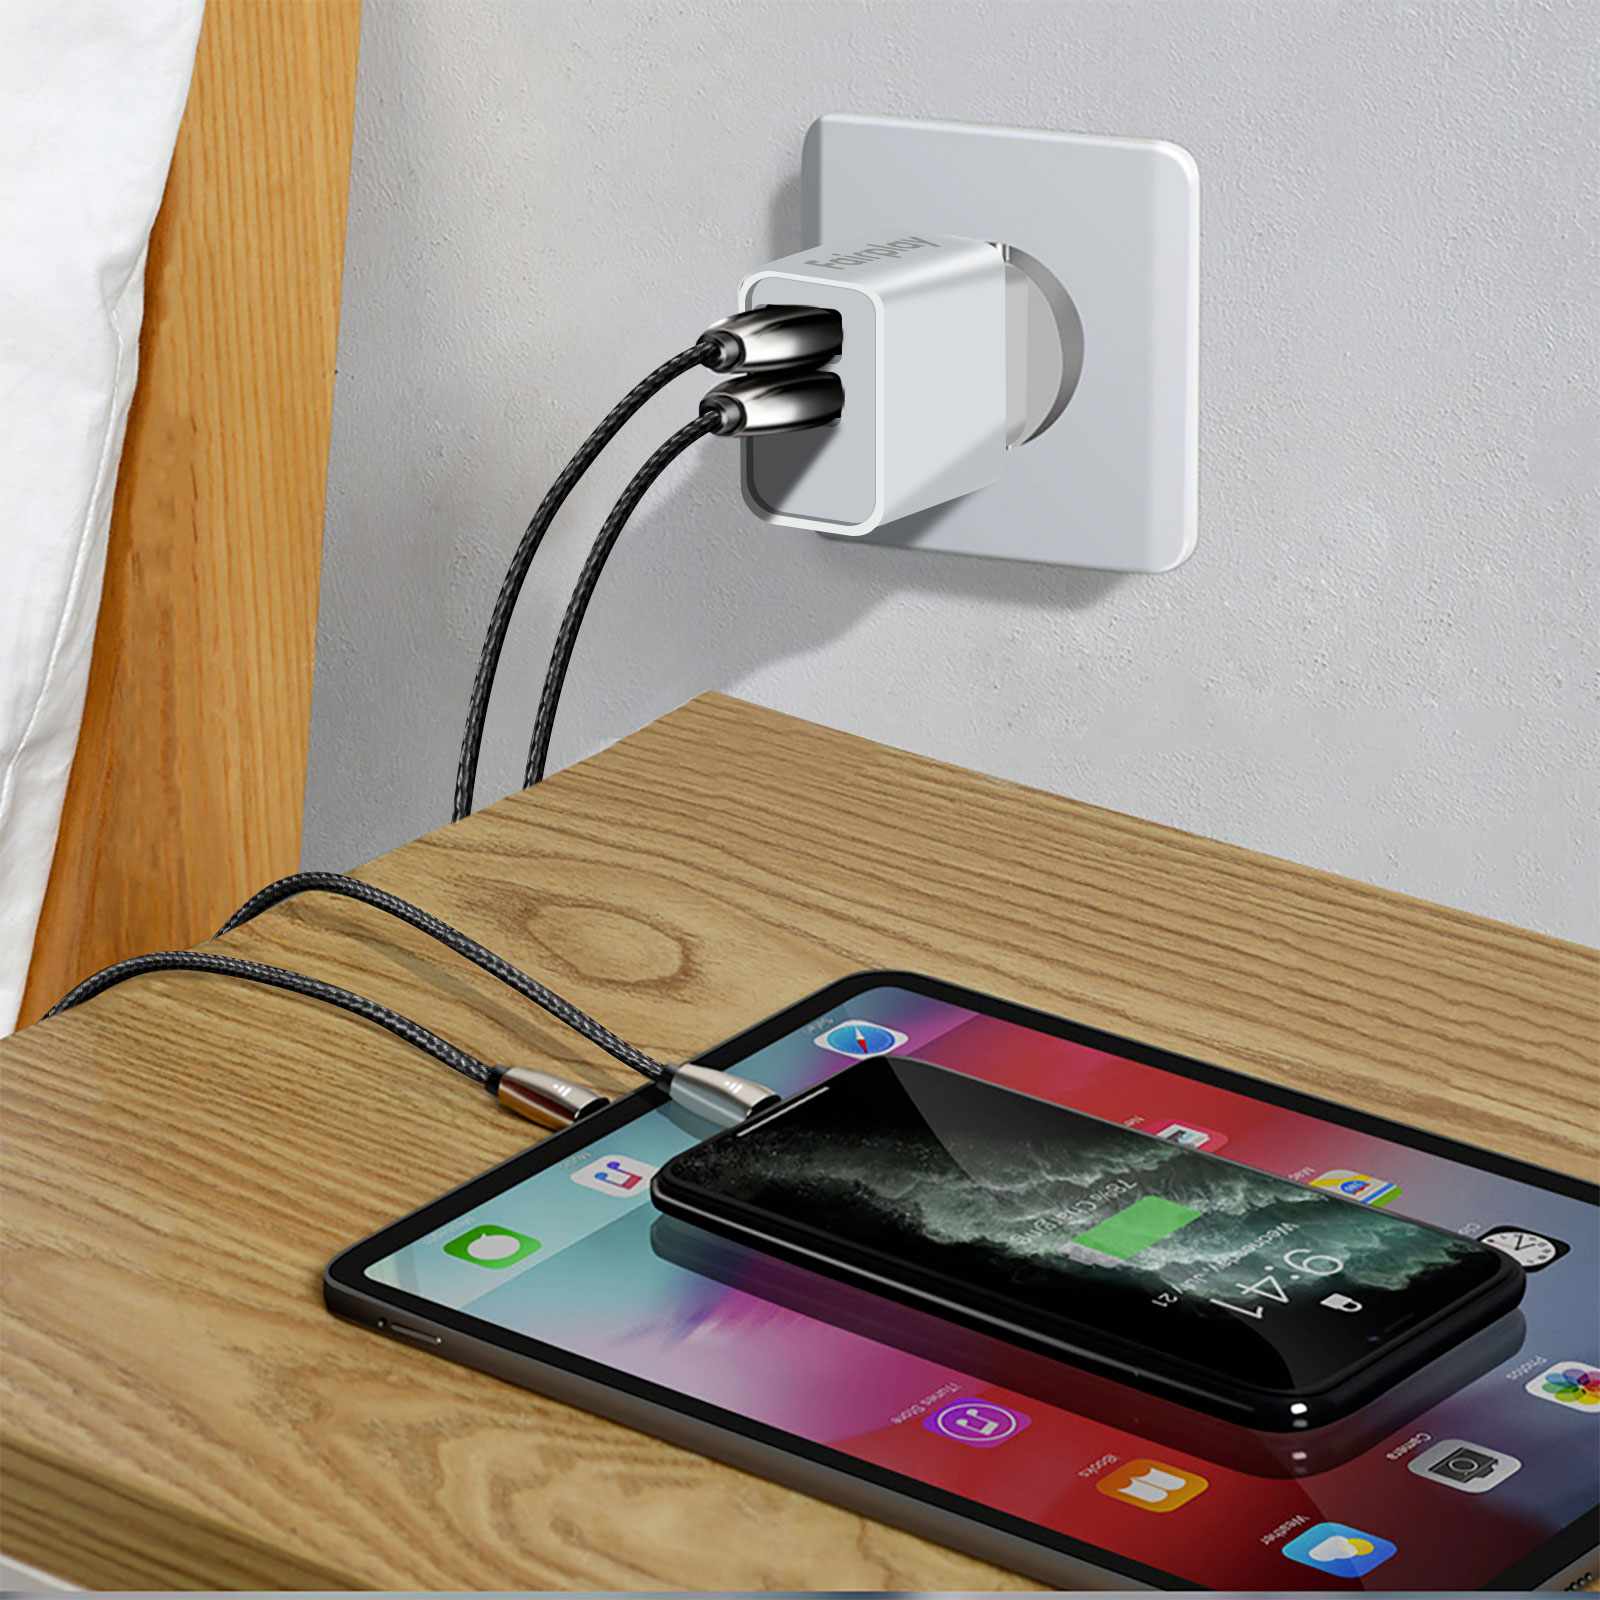 Pny chargeur secteur micro-usb avec câble intégré pour téléphone portable /  tablette 12 w blanc PNYCHARGMICROUSB - Conforama